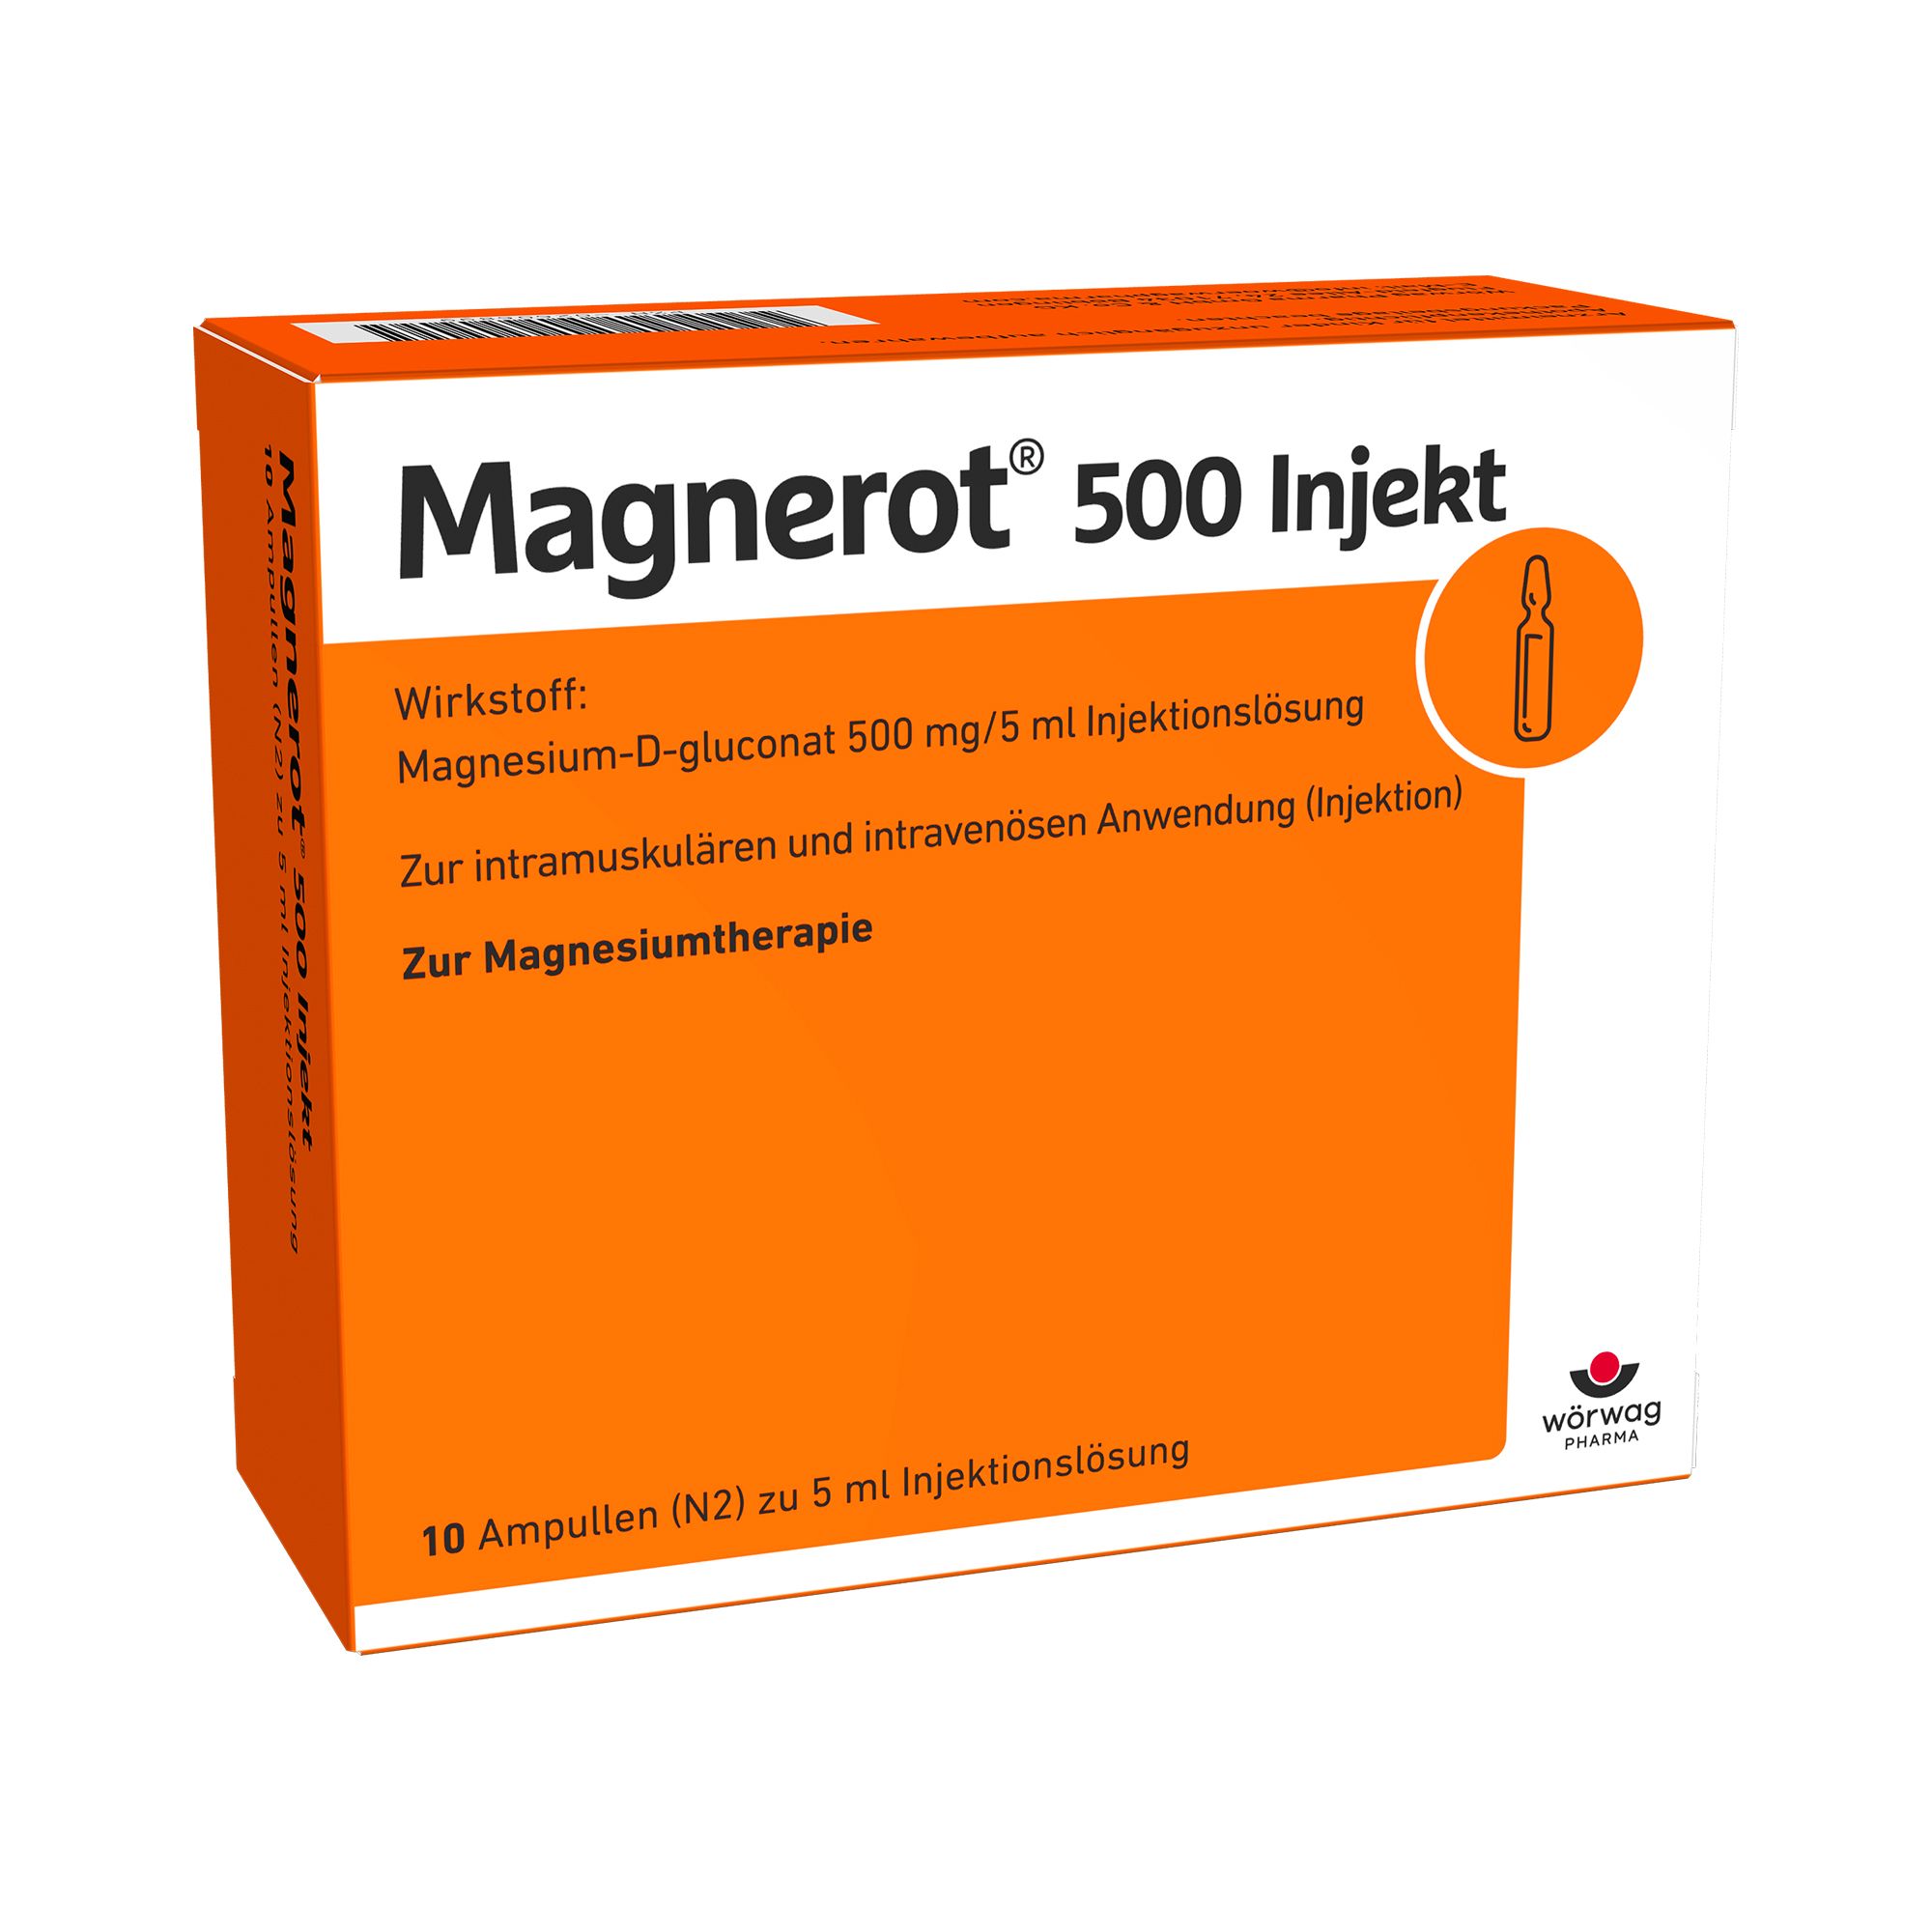 Magnerot® 500 Injekt